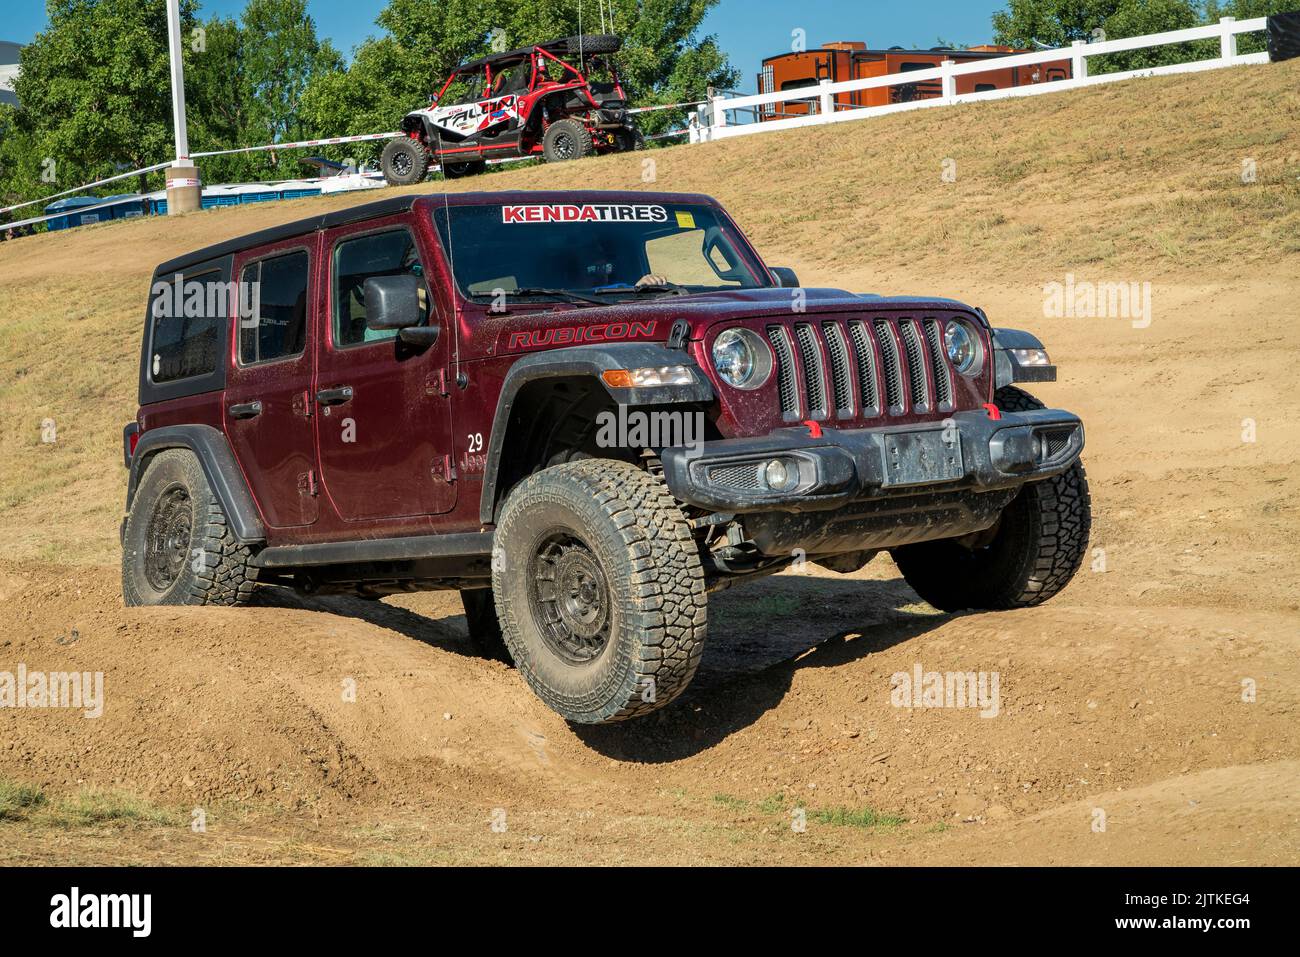 Loveland, CO, USA - 27 agosto 2022: Jeep Wrangler, modello Rubicon, su un corso di allenamento fuoristrada. Foto Stock